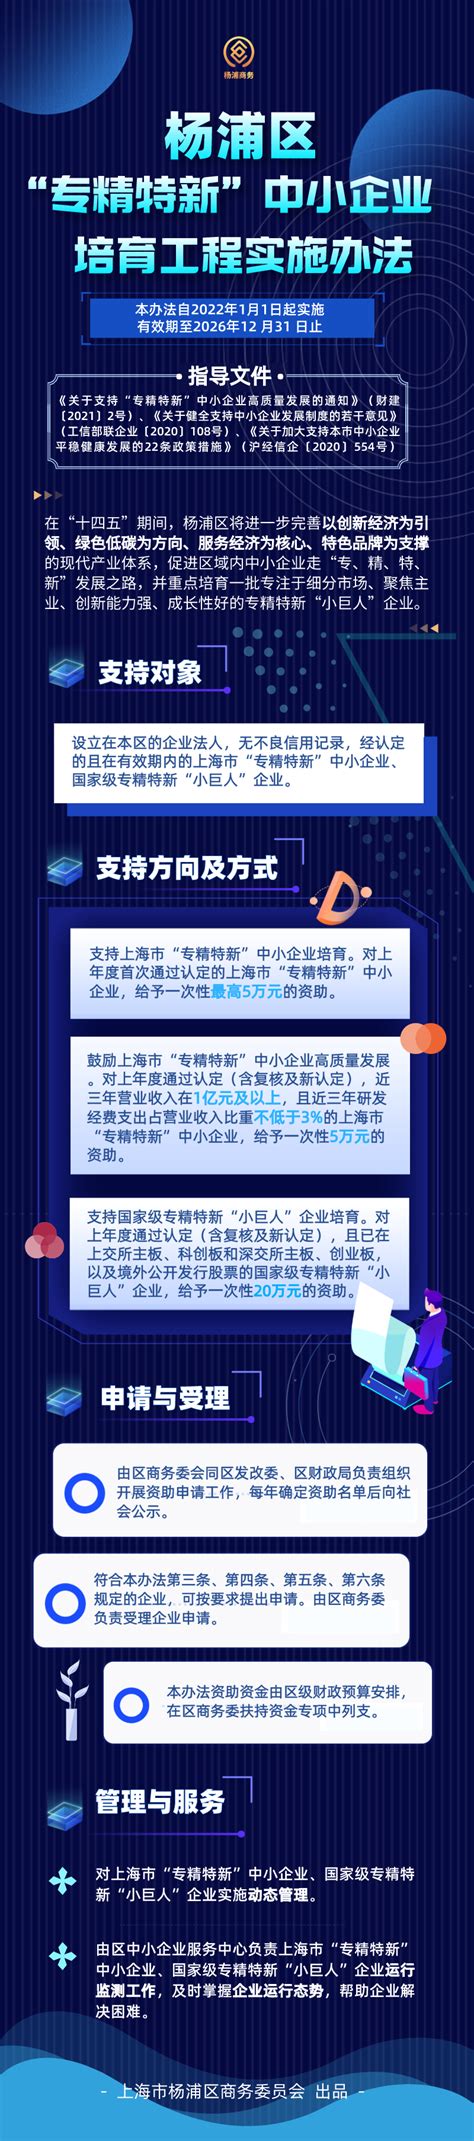 【新闻】杨浦区2021年中小企业服务质量第三方测评工作培训会议顺利举办